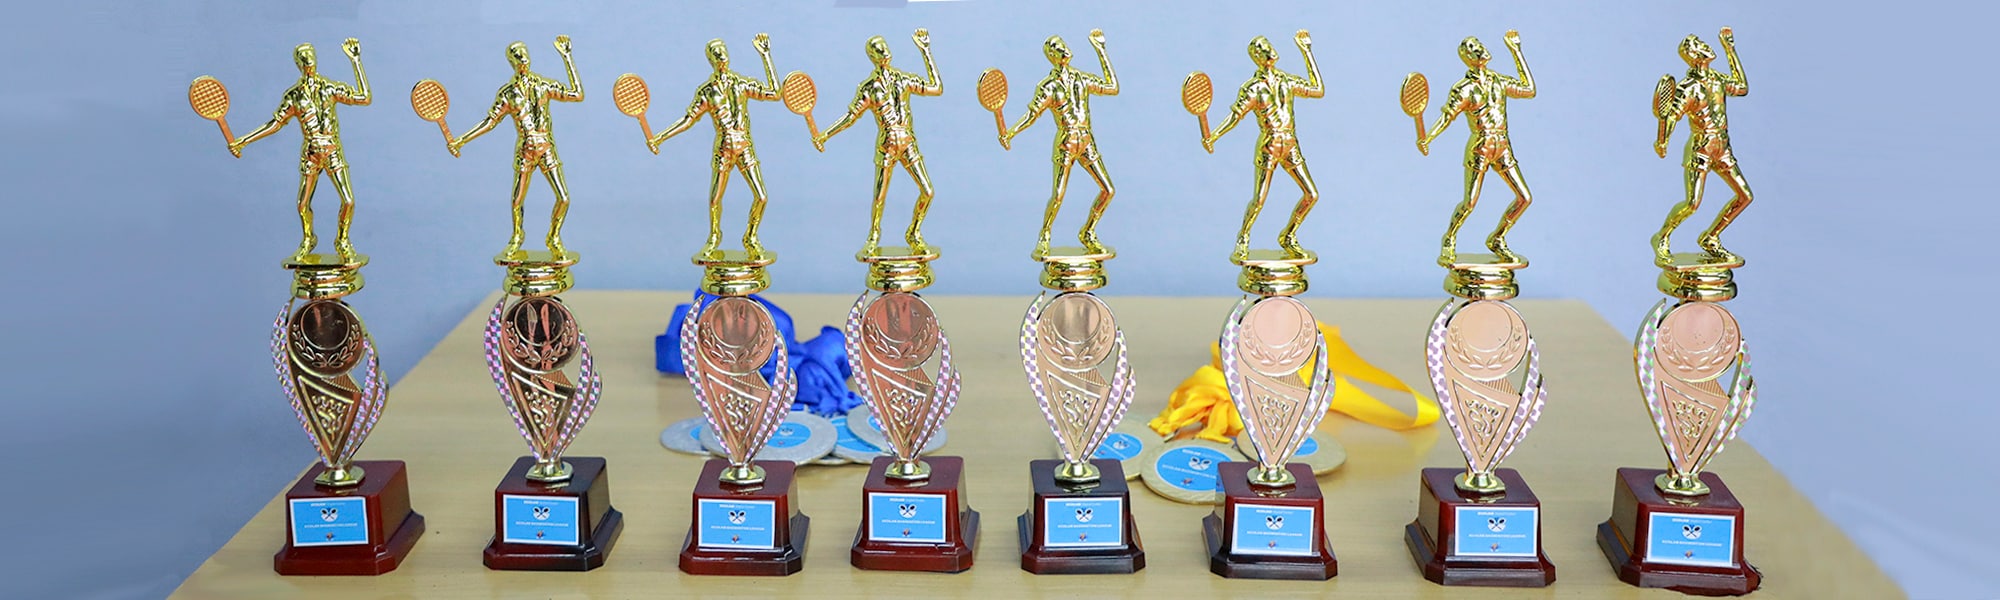 Ecolab Digital Center Badminton League Trophies